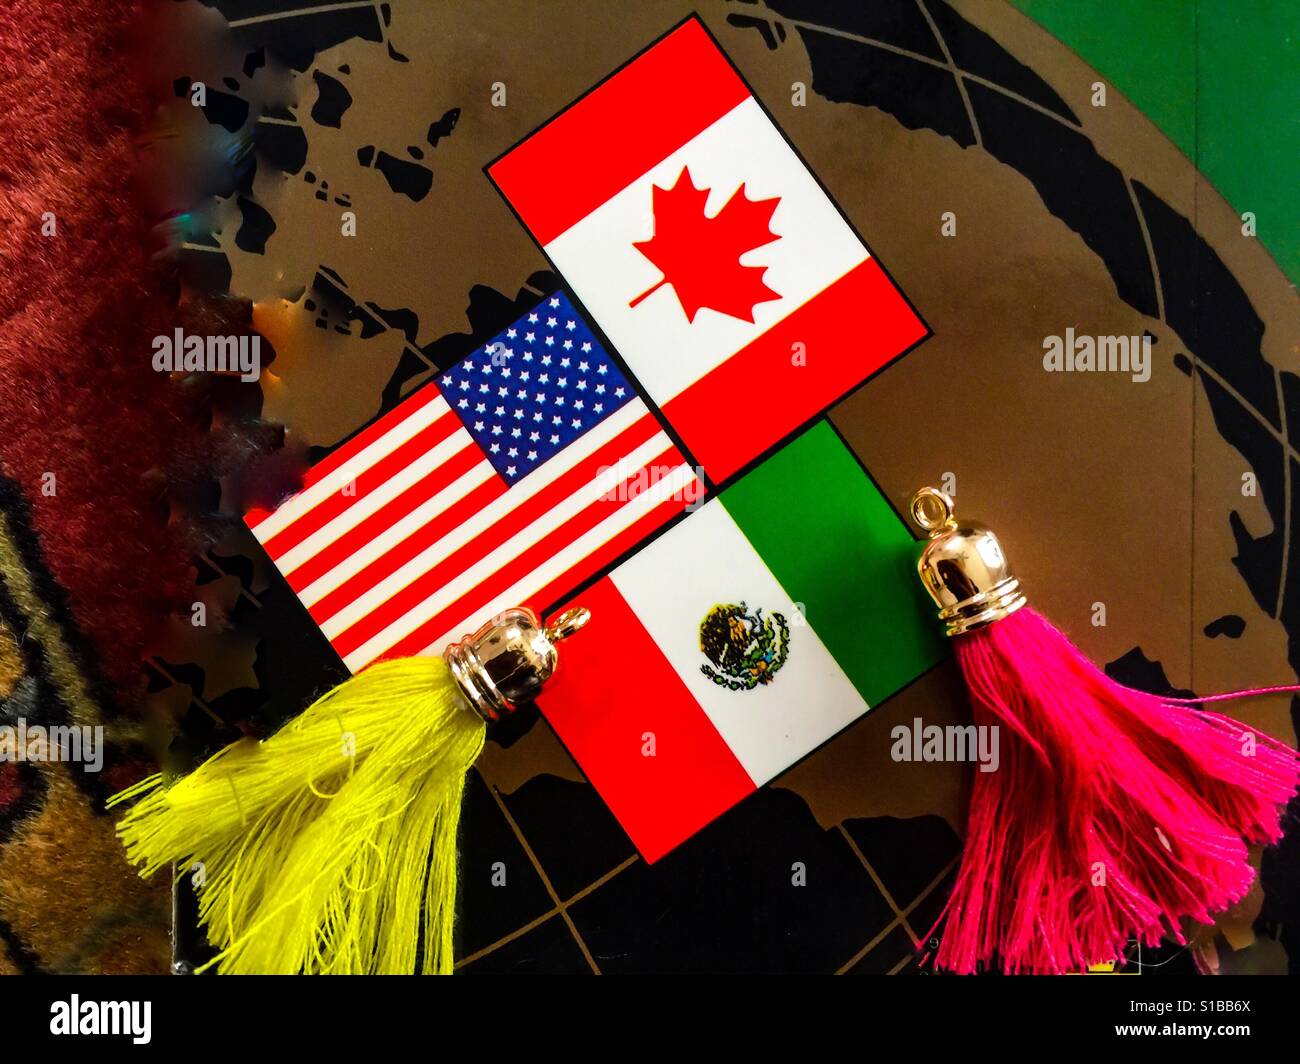 Le monde de l'ALENA, l'AEUMC maintenant, trois pays trois drapeaux dans un arrangement emblématique. La feuille d'érable, les Stars and Stripes et le drapeau mexicain s'arrangeaient harmonieusement. Pas de discorde ou de friction. Conception Banque D'Images